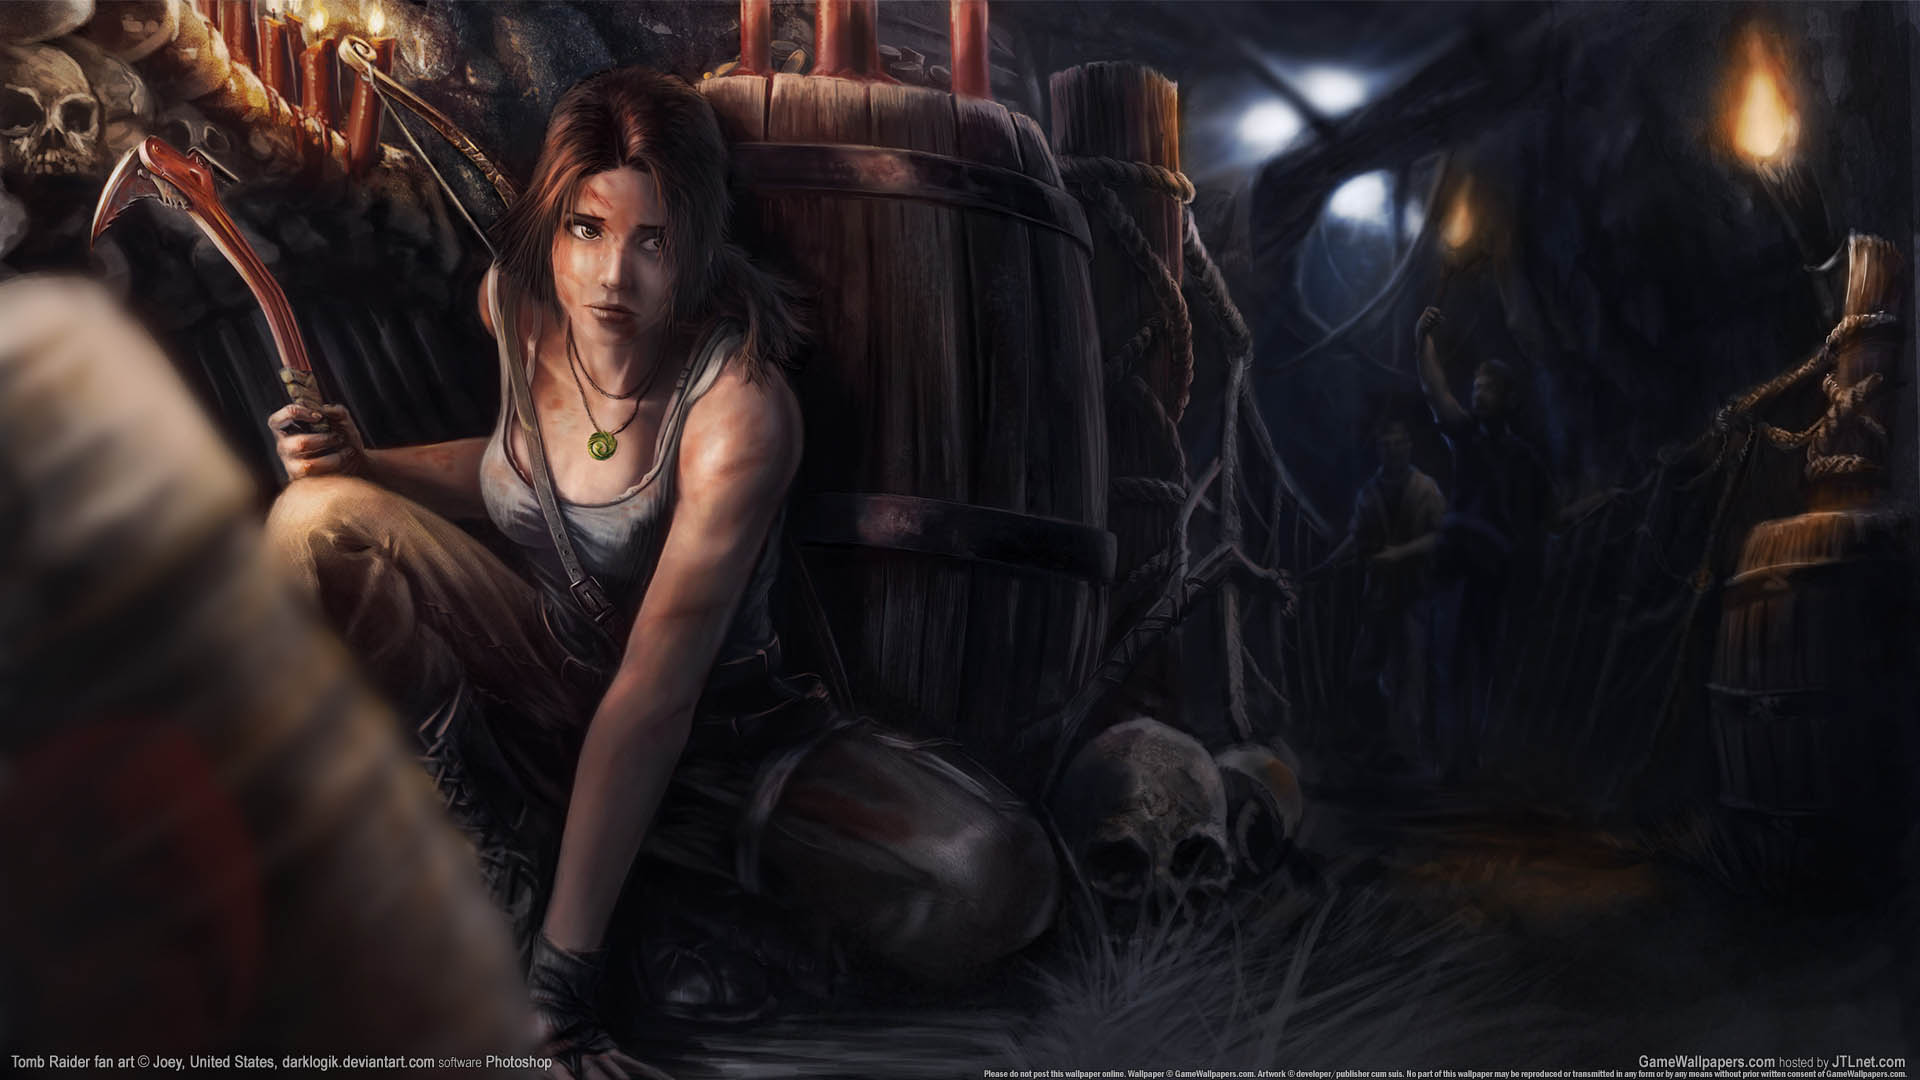 Tomb Raider fan art achtergrond 03 1920x1080